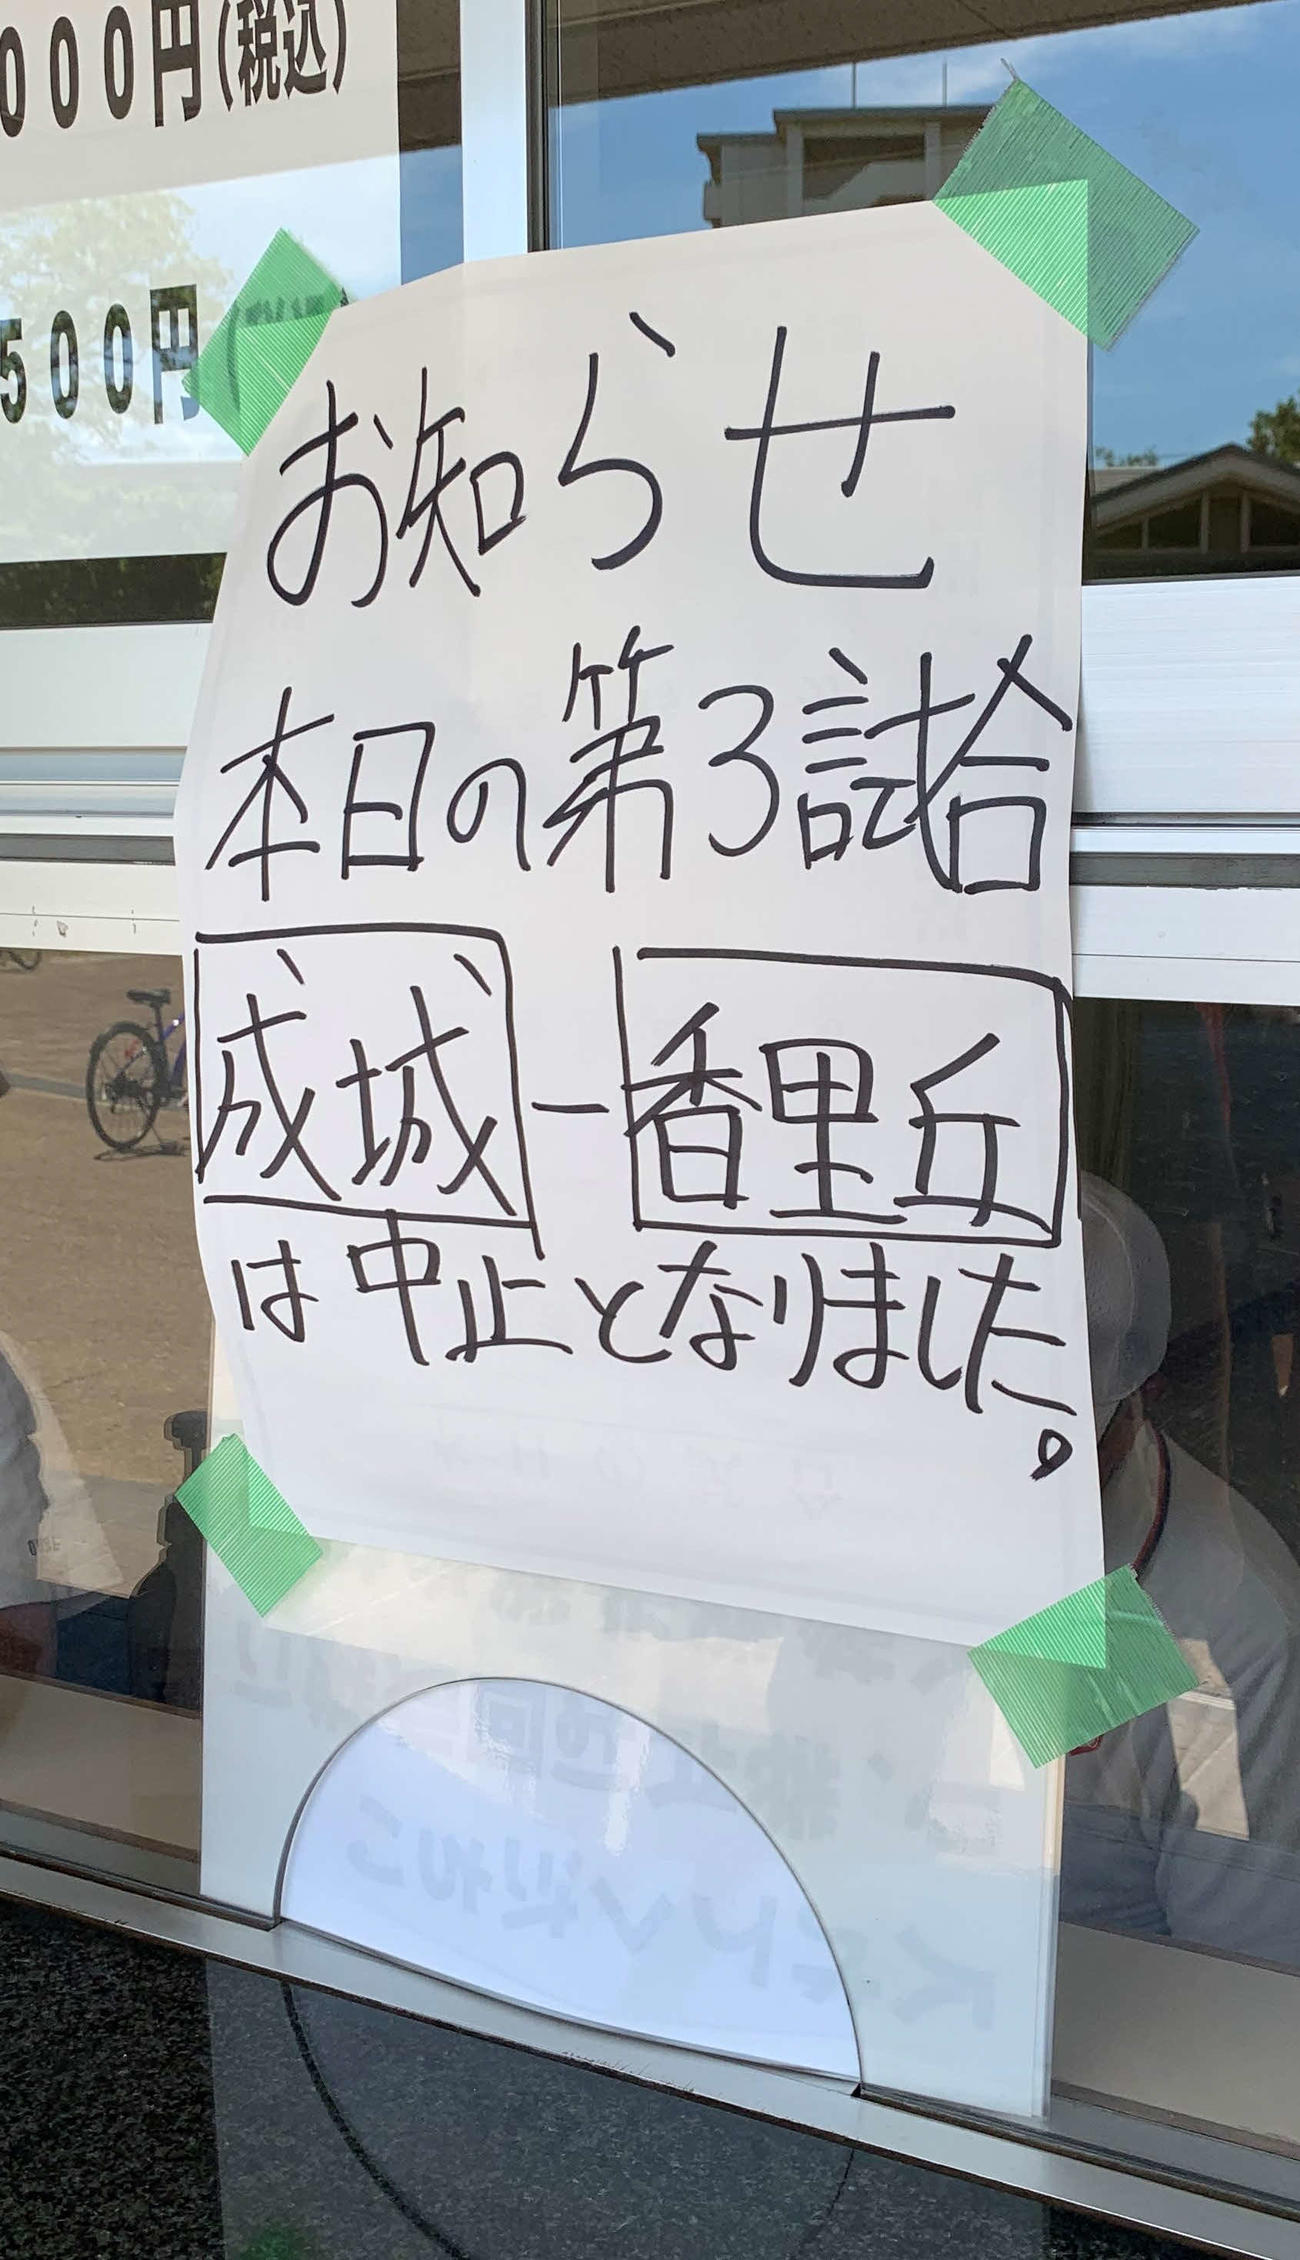 住之江公園野球場での第3試合、成城－香里丘戦の中止を知らせる張り紙